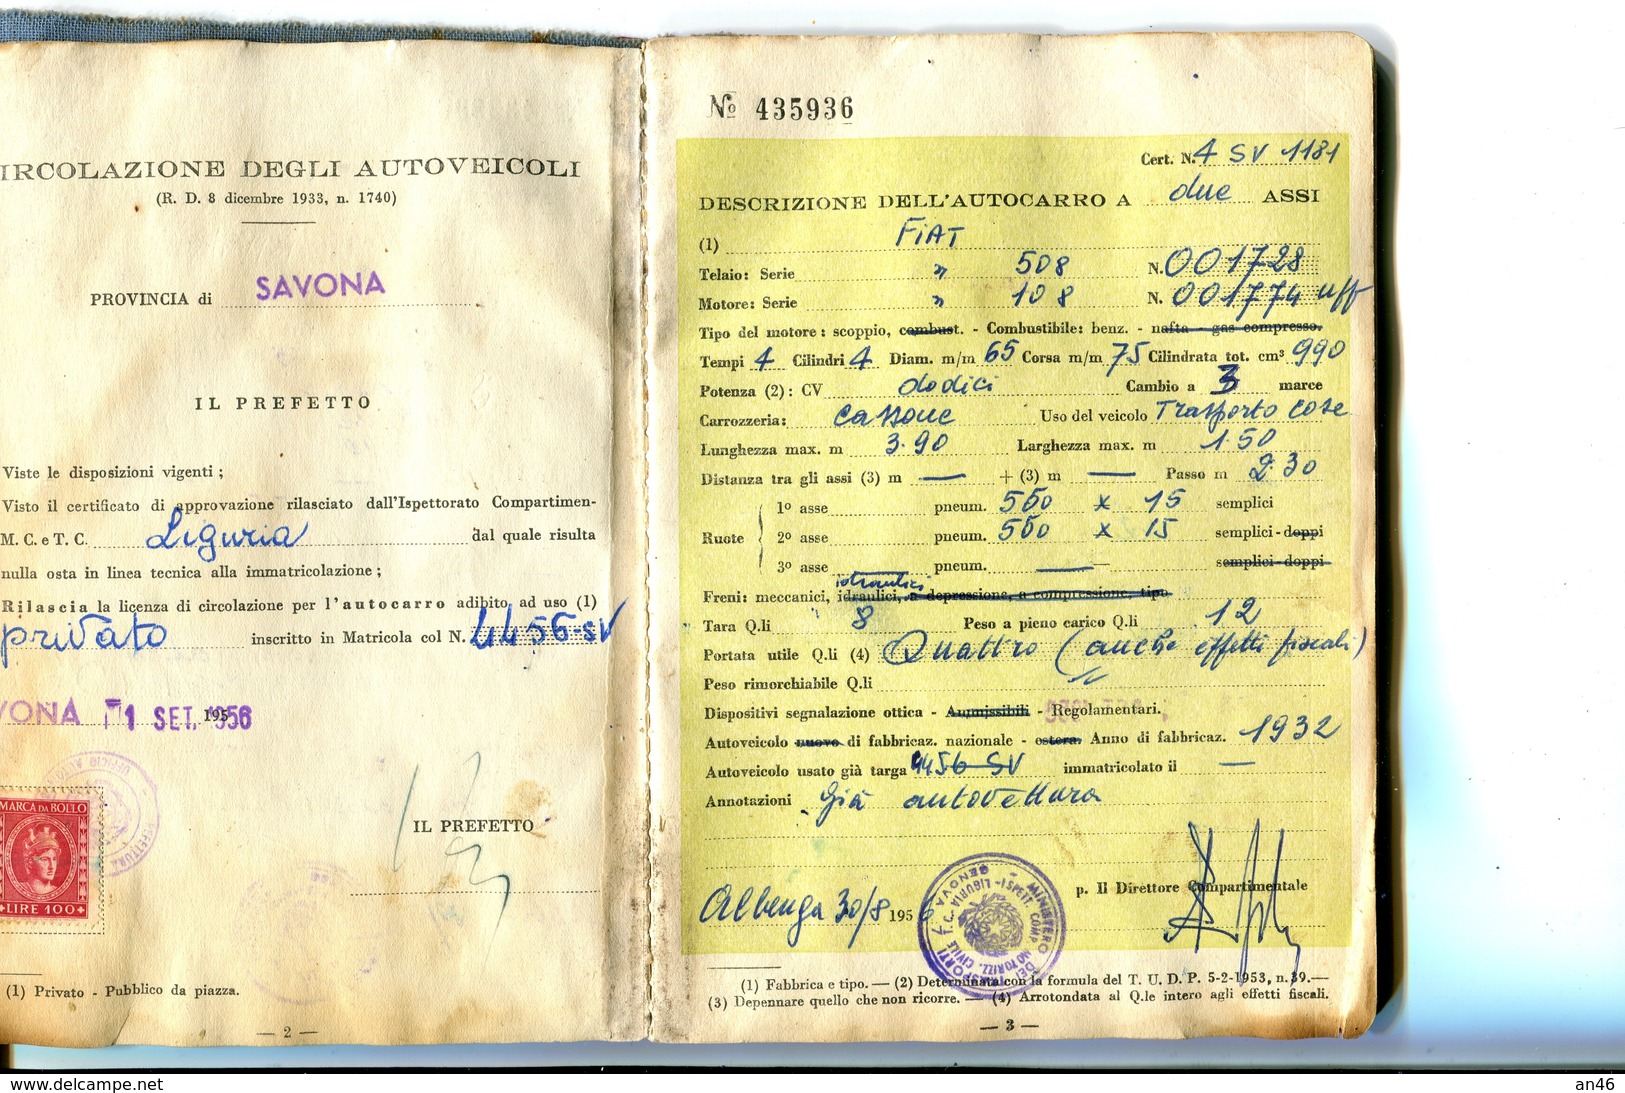 TESSERA_TESSERE_DOCUMENTO/I-"LICENZA PER CIRCOLAZIONE DI AUTOCARRO-MINISTERO TRASPORTI-SETT.1956- - Collections